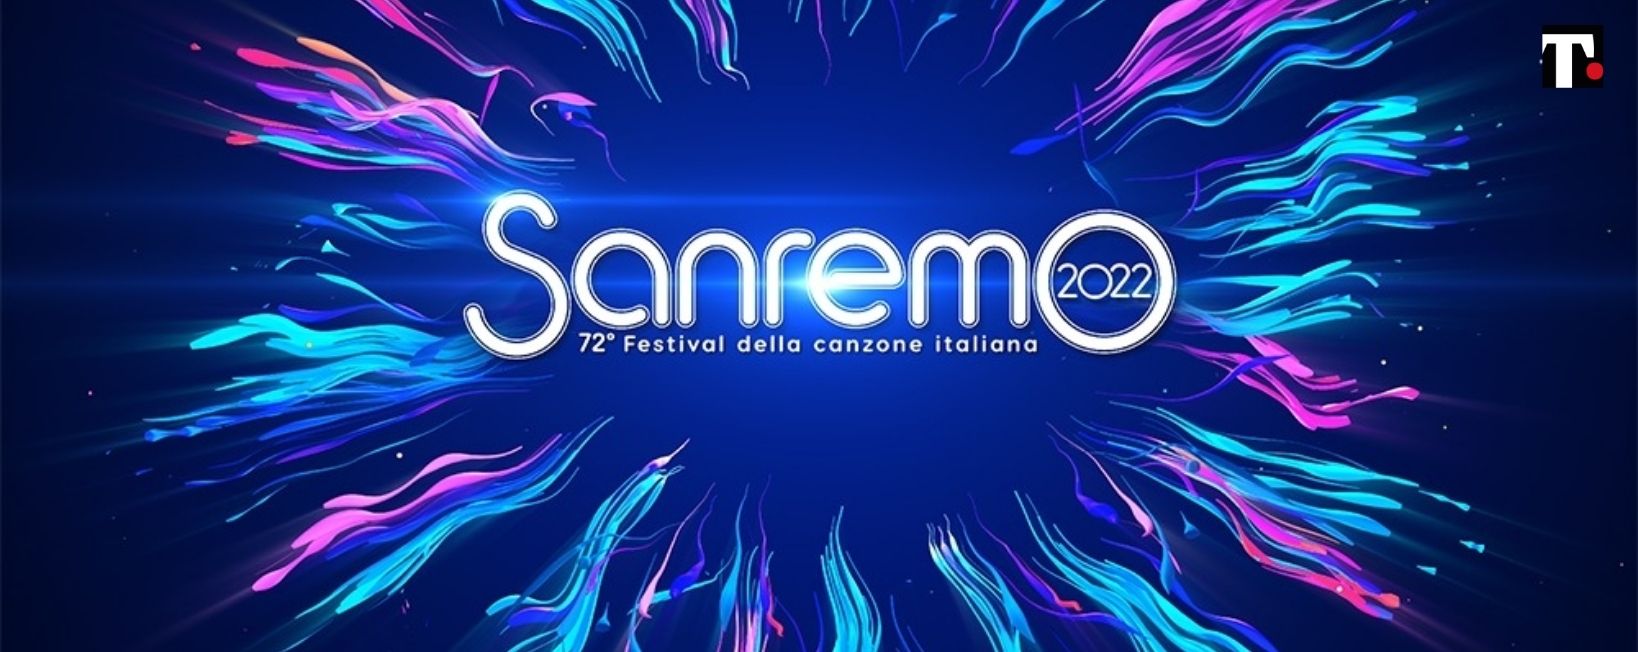 Sanremo 2022 i duetti cover